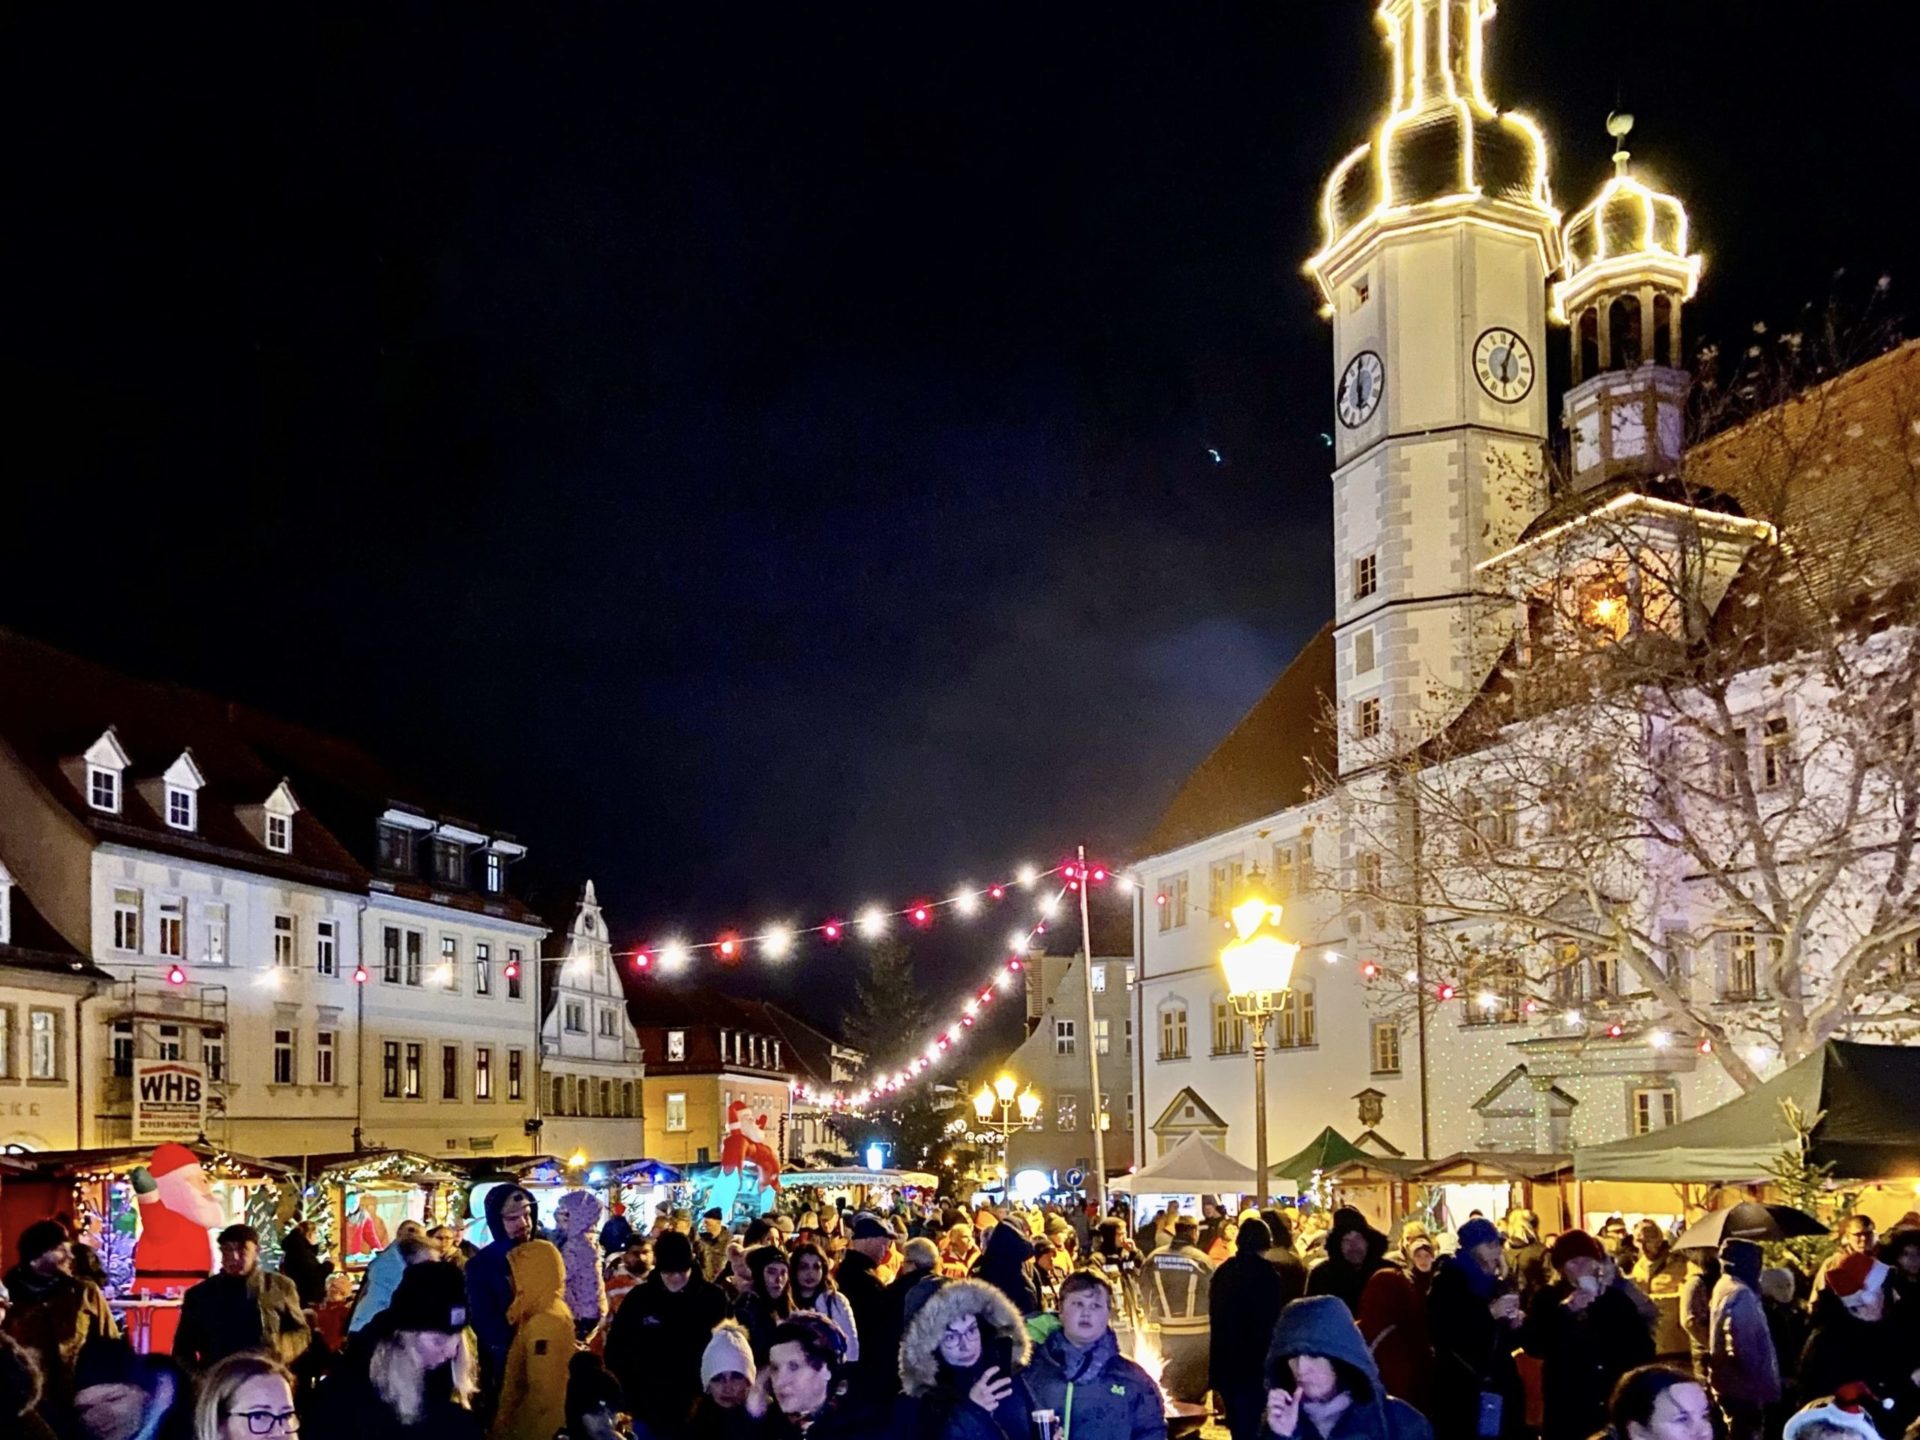 Nacht-Weihnachtsmarkt und Adventsmarkt in Eisenberg